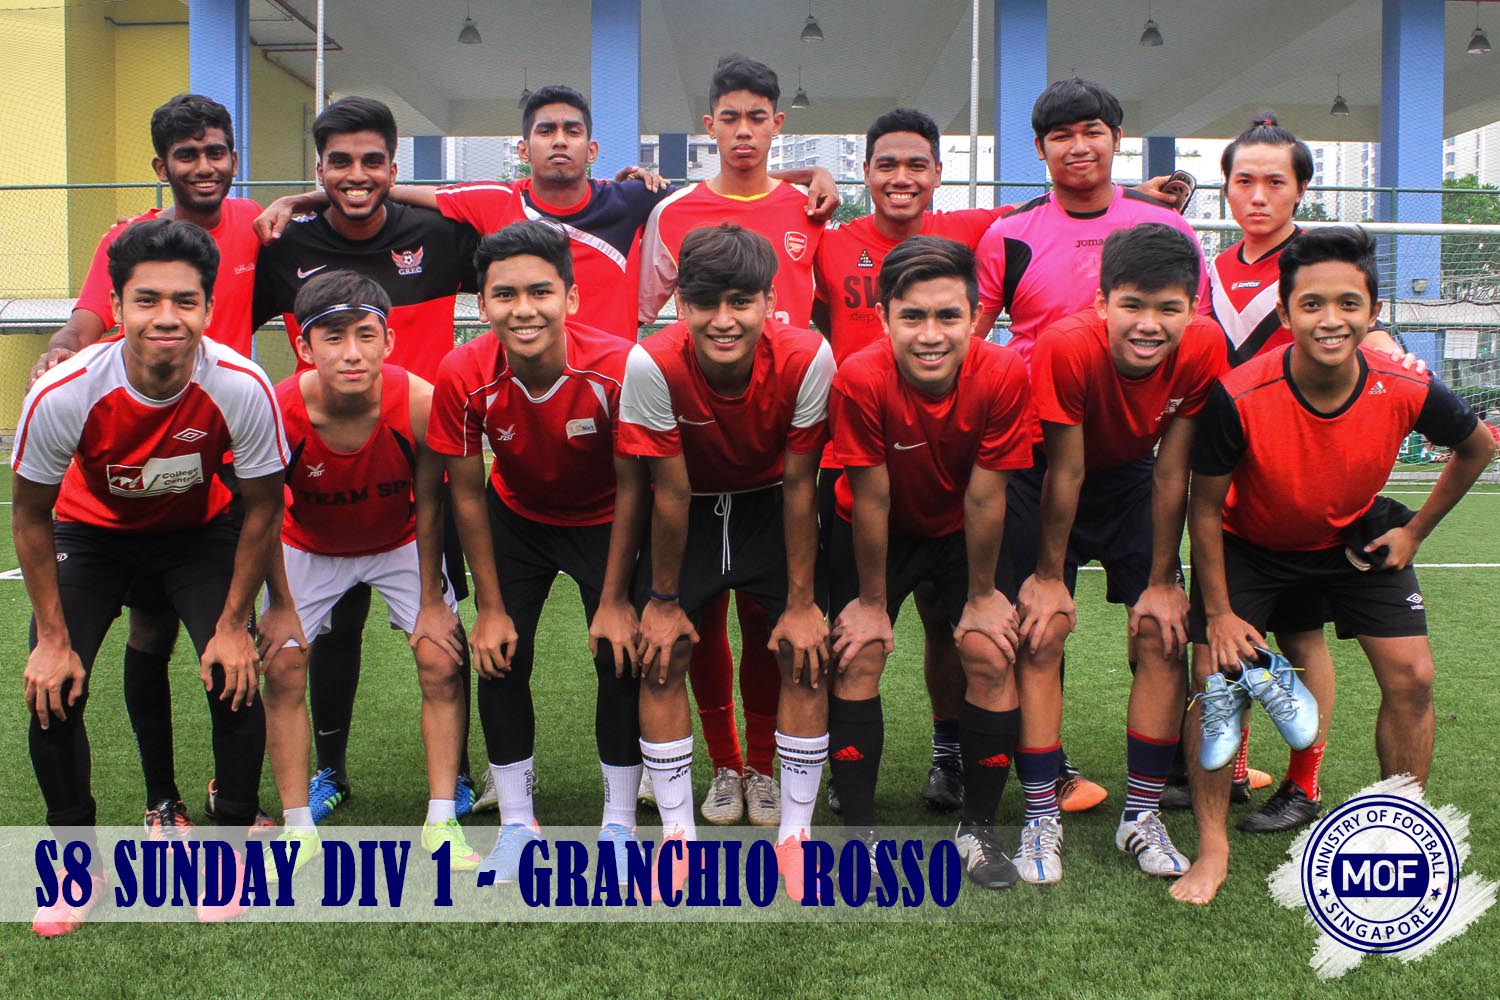 Granchio Rosso FC